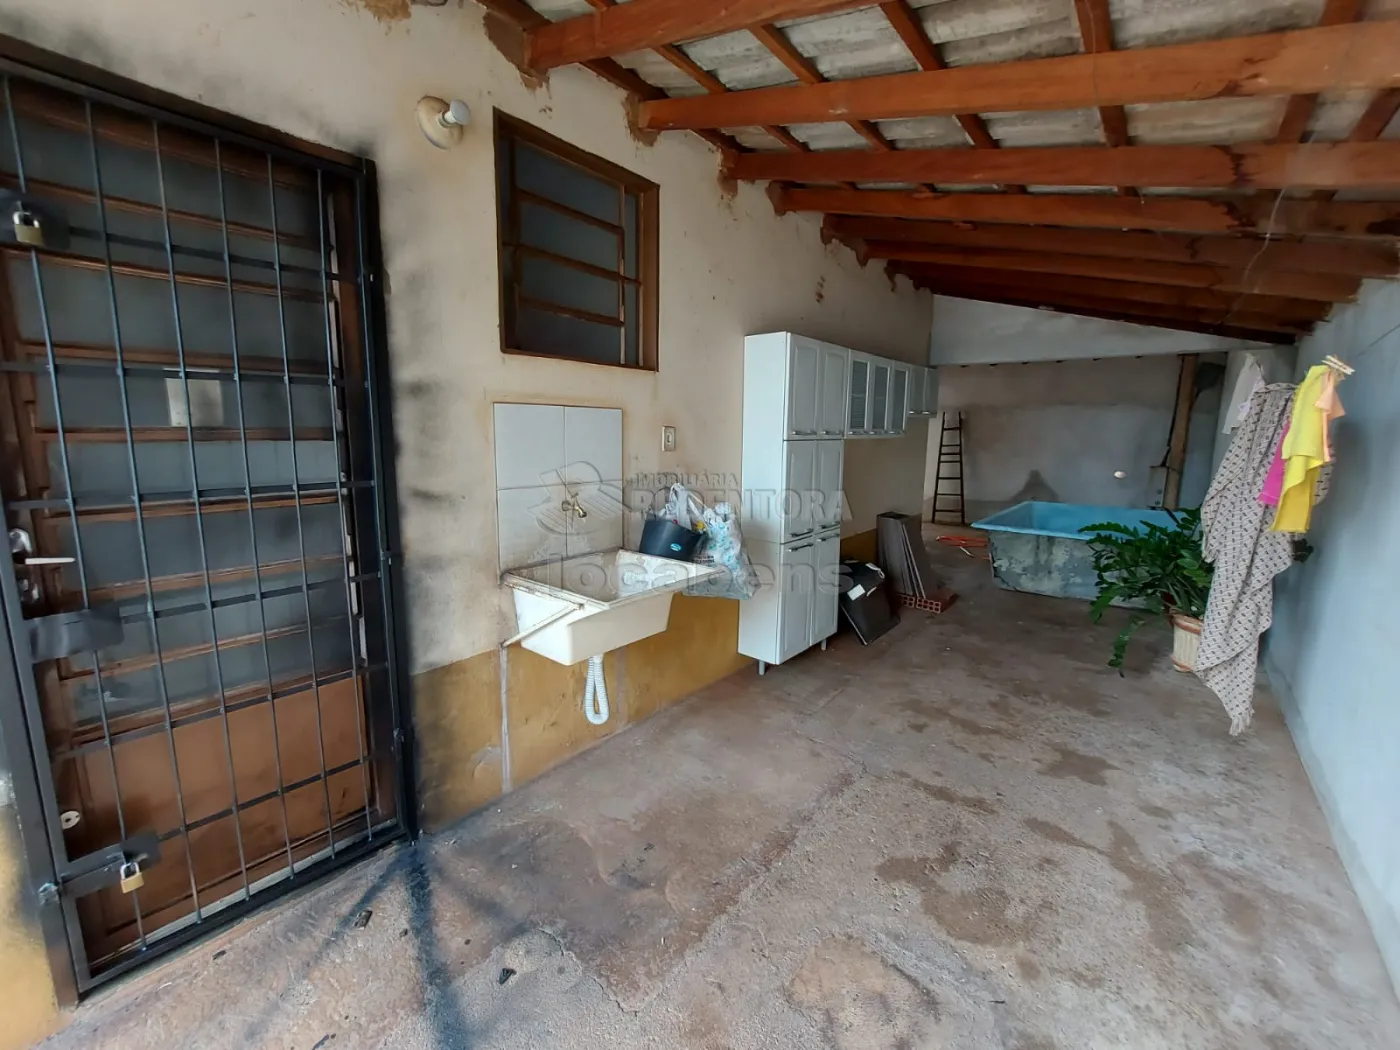 Alugar Casa / Padrão em São José do Rio Preto apenas R$ 650,00 - Foto 7